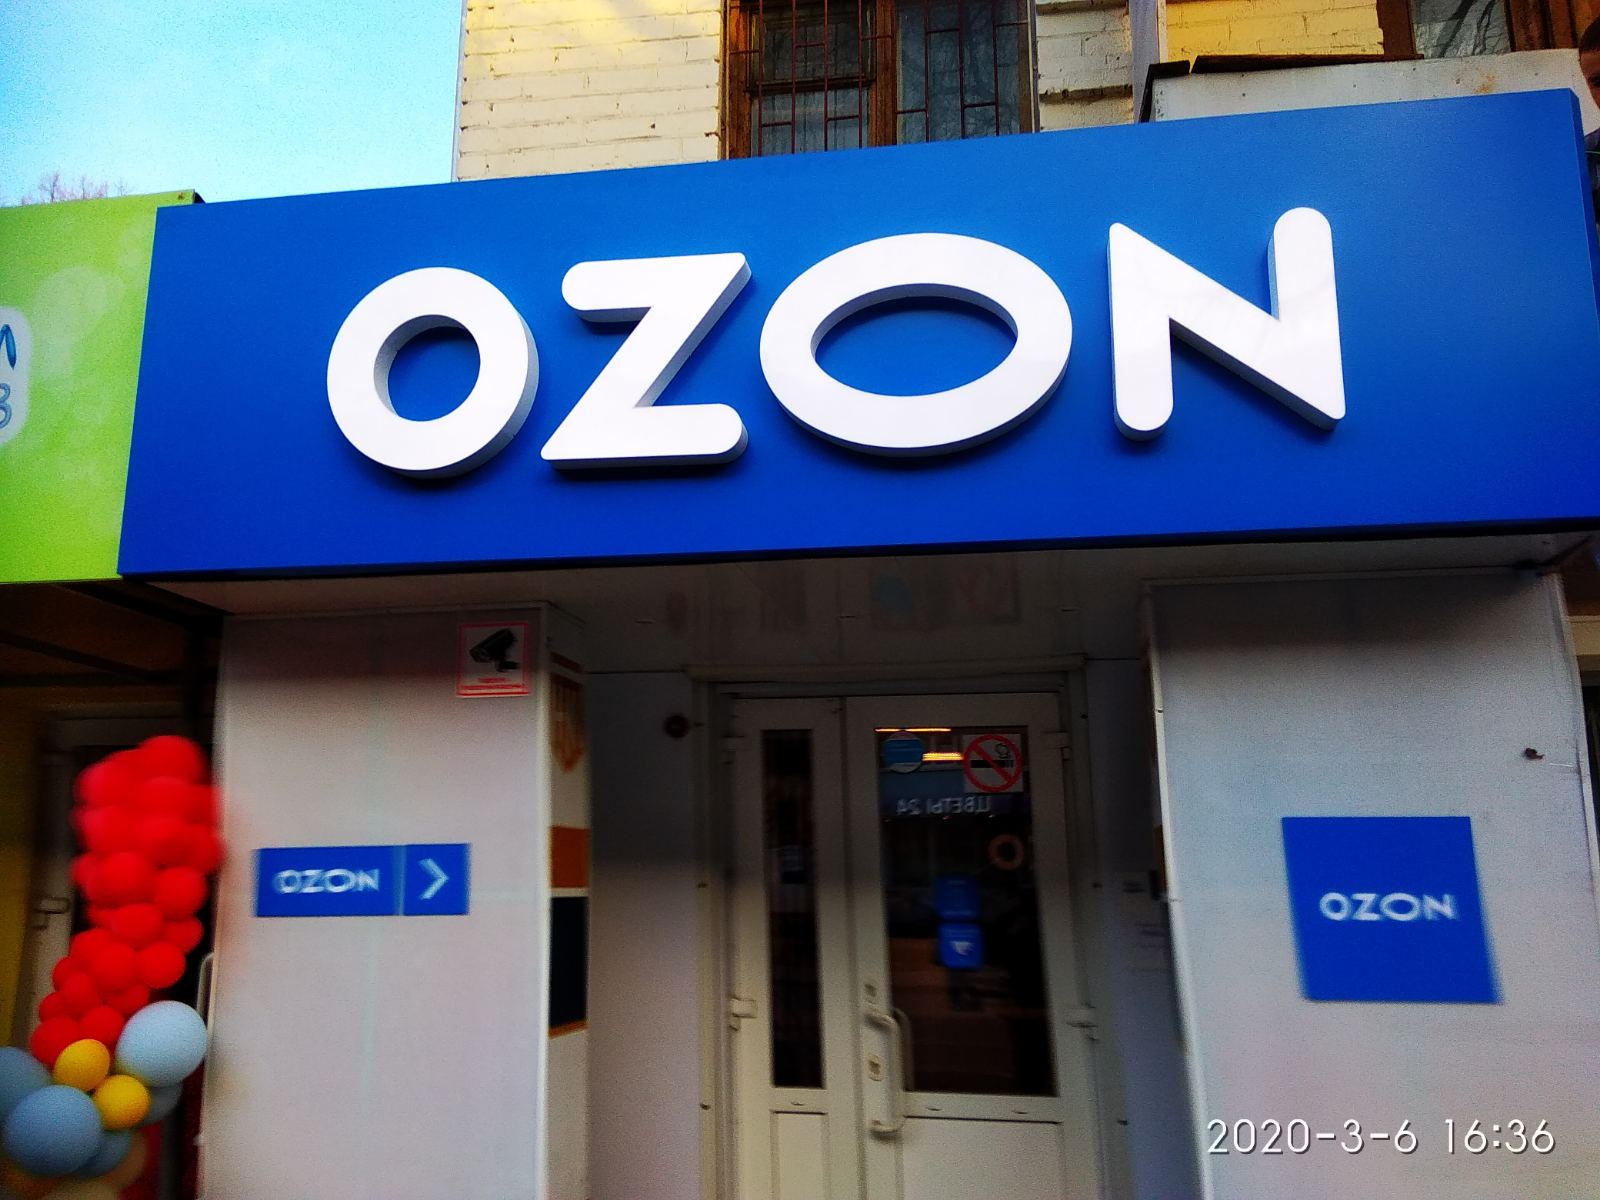 Озон новомосковск интернет магазин